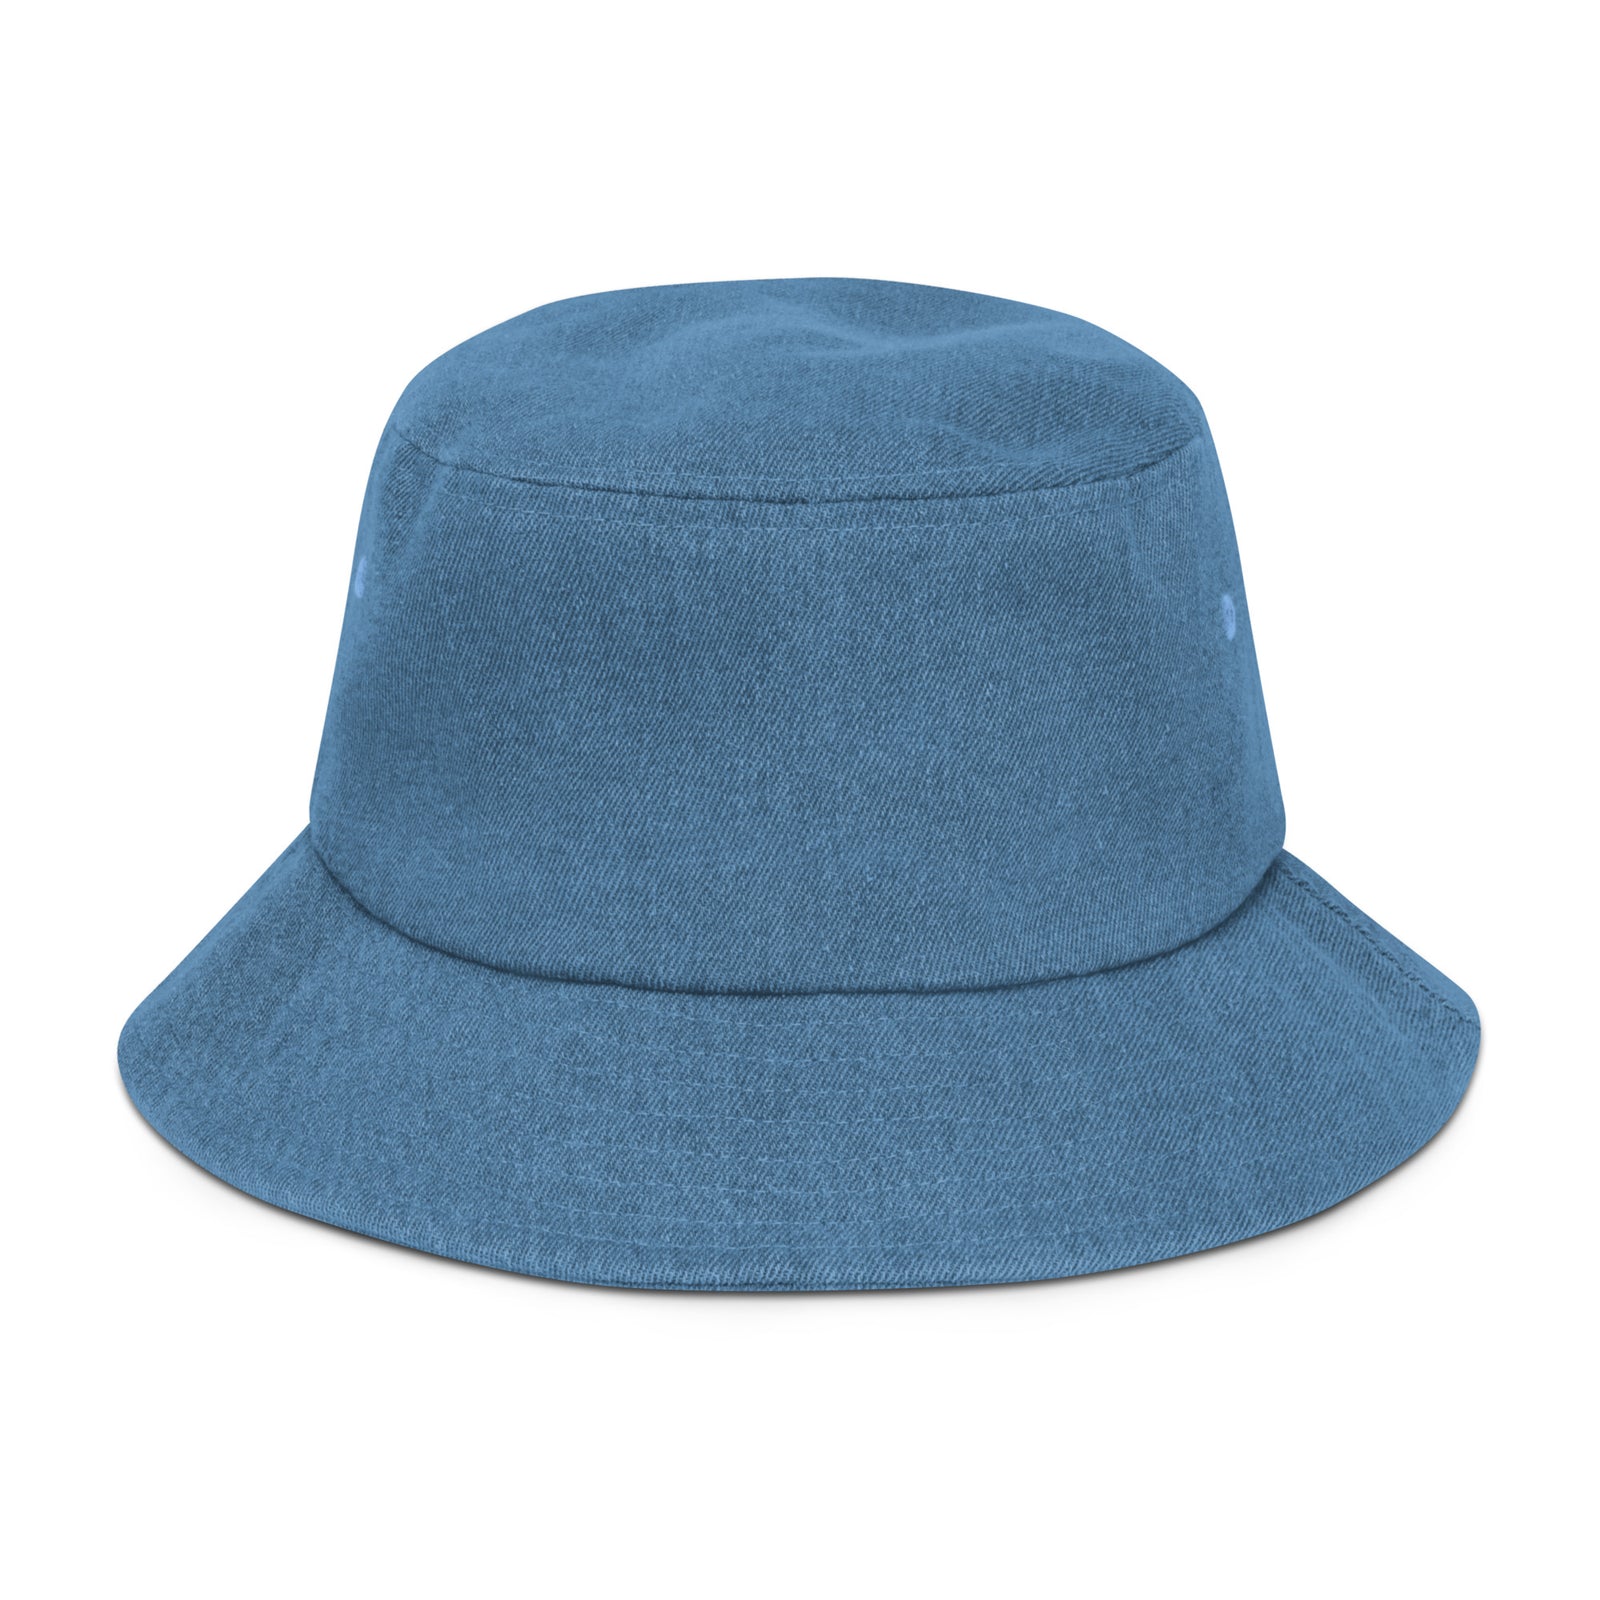 Denim bucket hat - TryKid